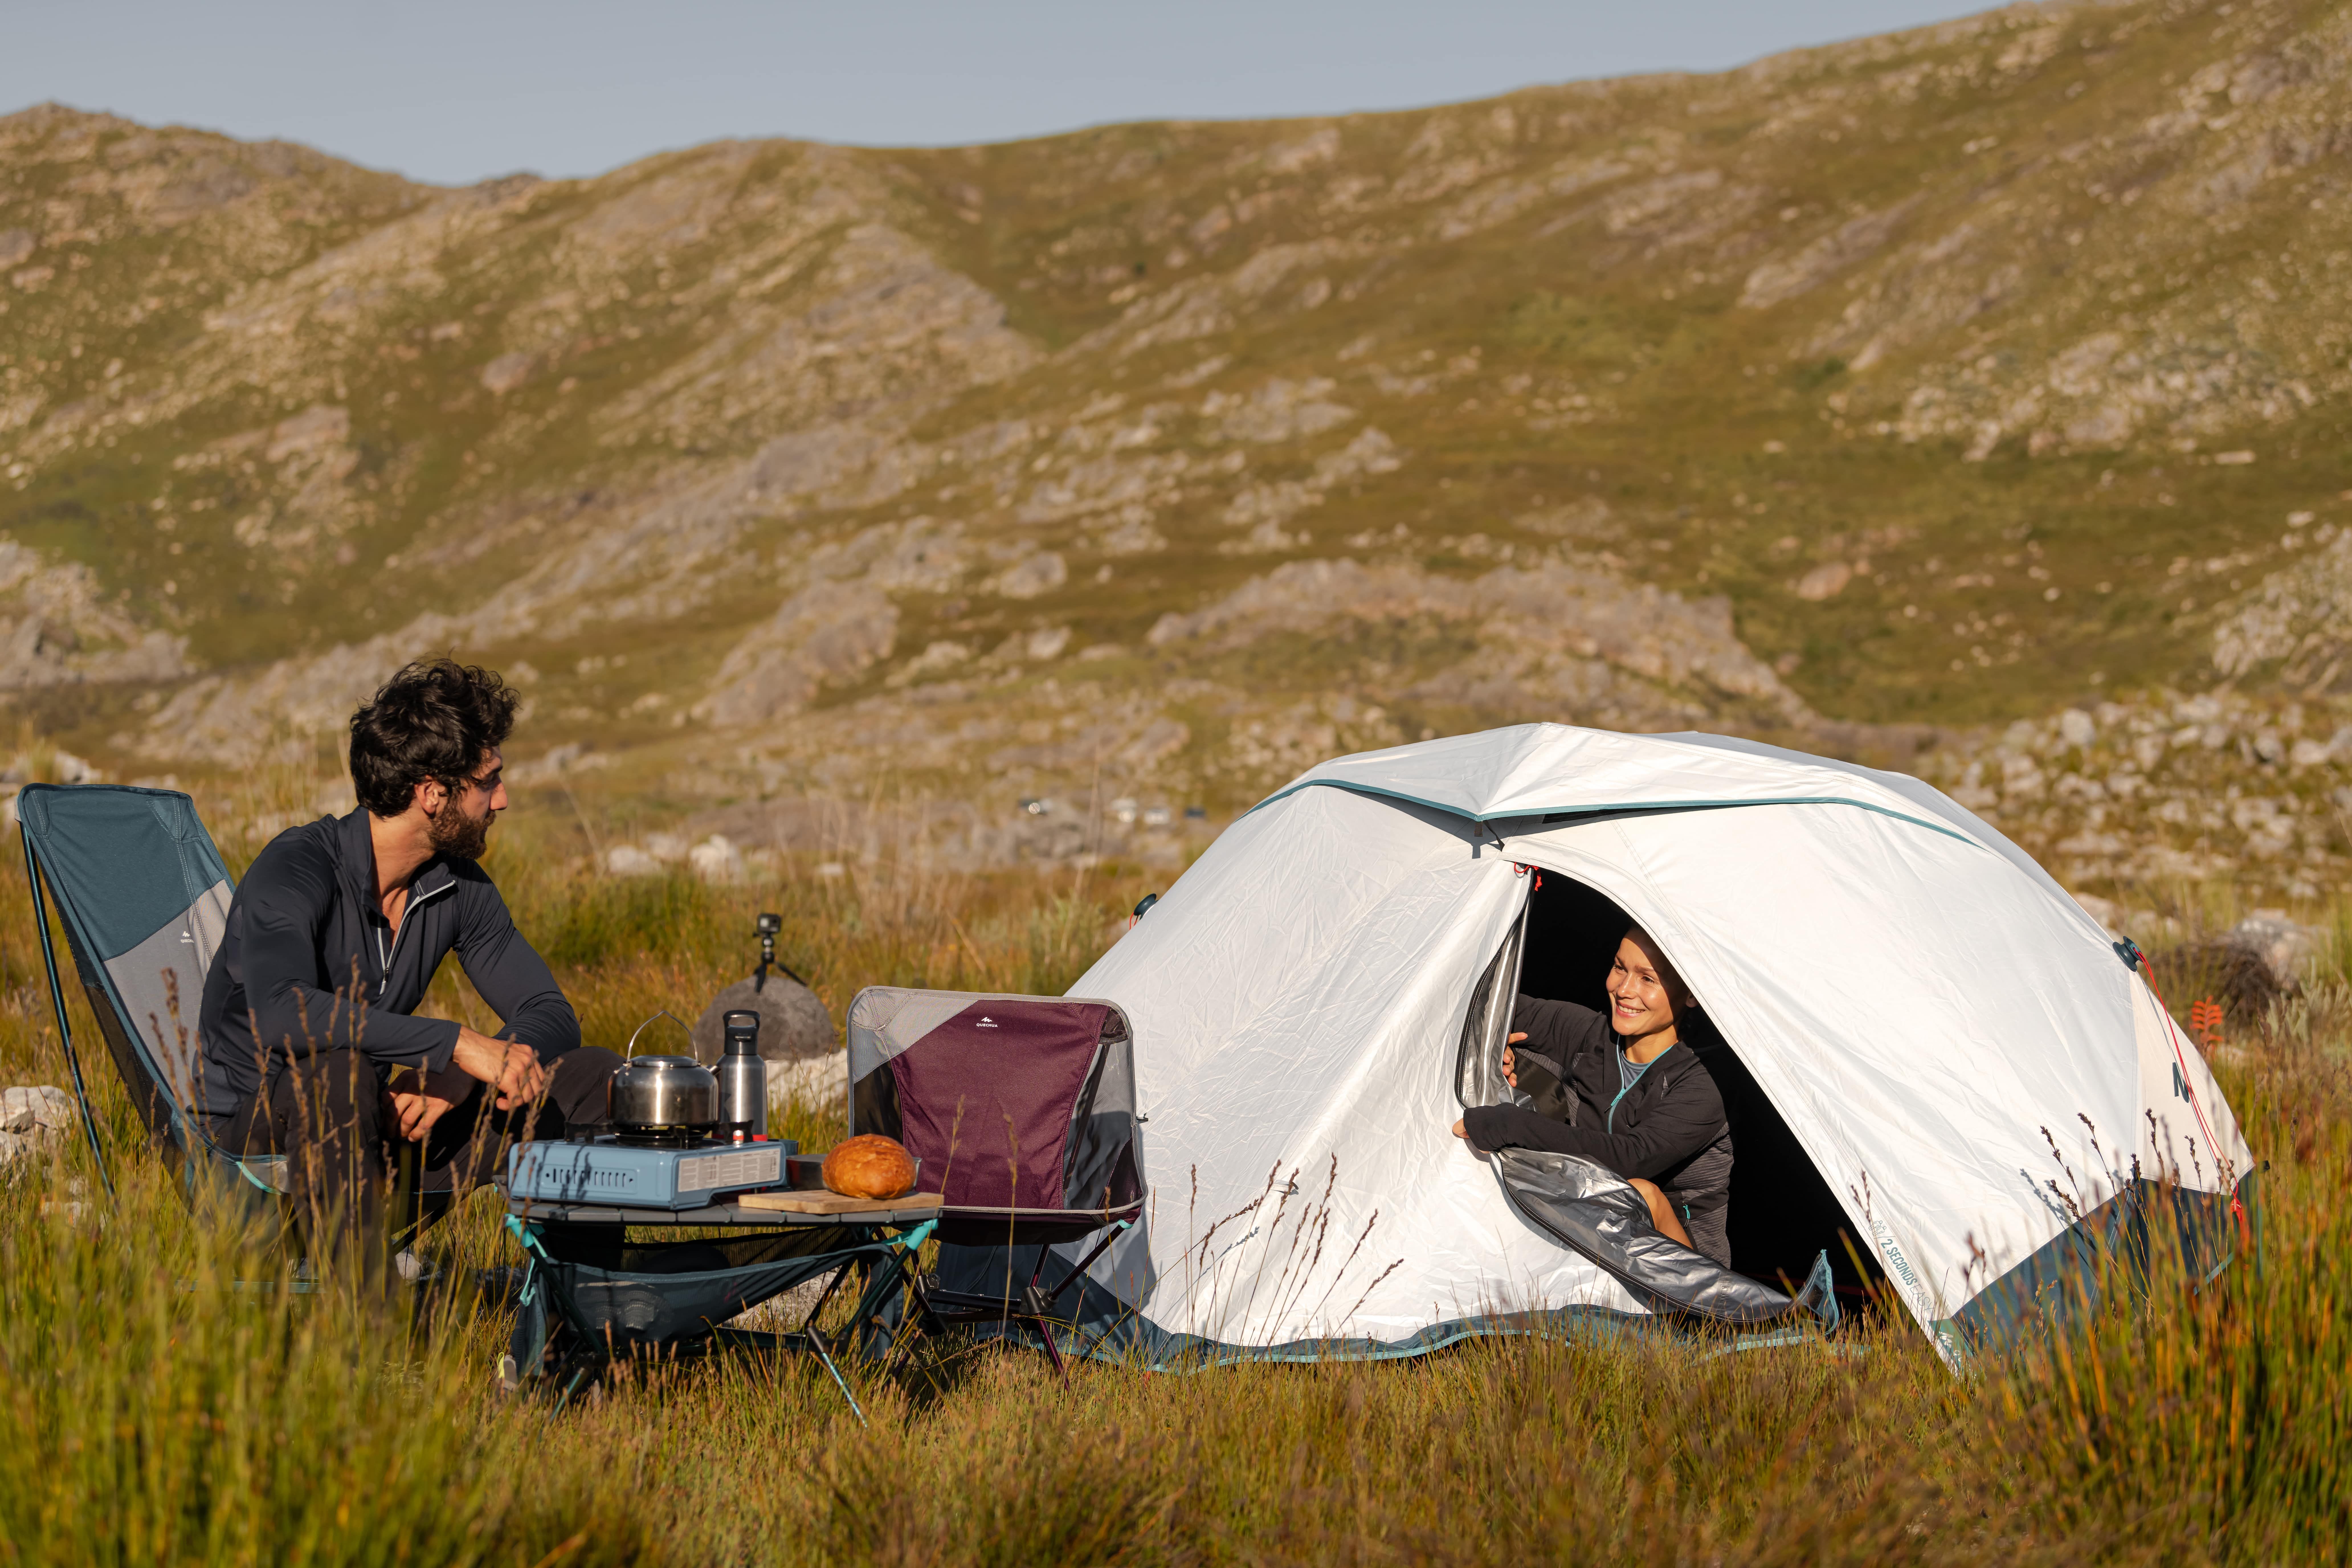 Soplar En el nombre Acercarse Decathlon tiene la mejor tienda de campaña para irte de camping